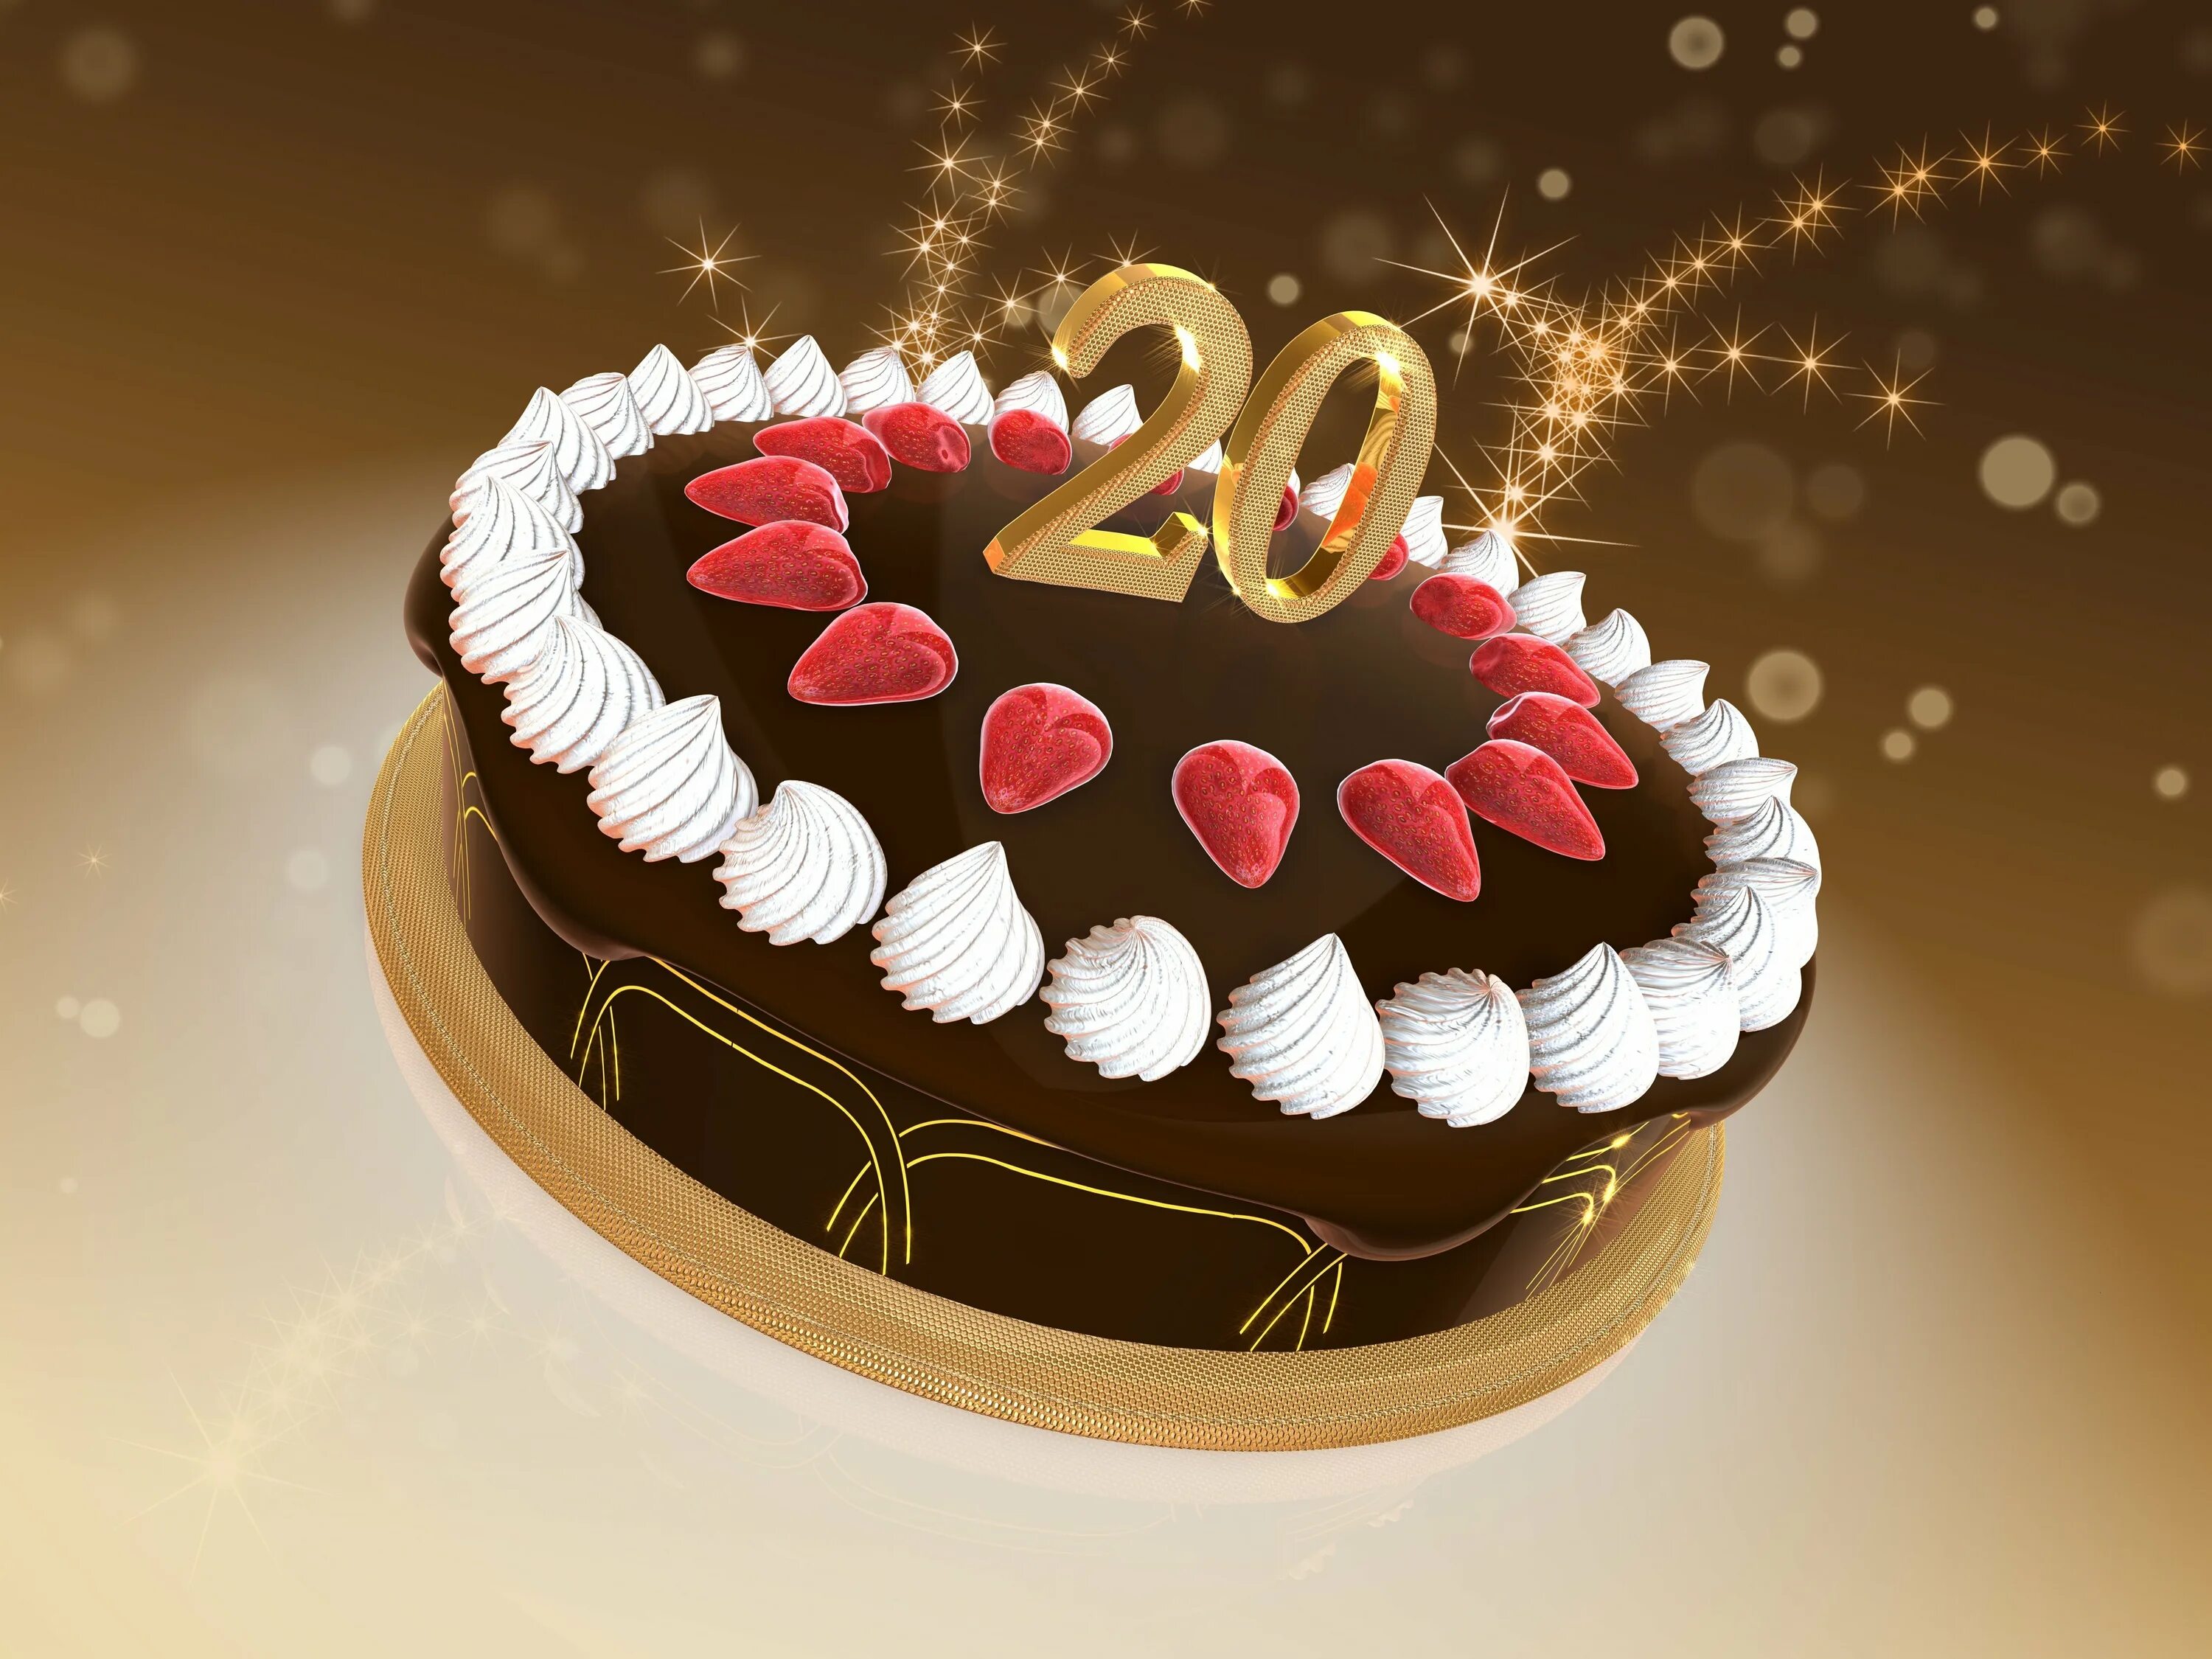 С 20 летием. С юбилеем 20 лет. Торт на день рождения 20 лет. Тортики на юбилей 20 лет. Торт на день рождения 20 лет с юбилеем.